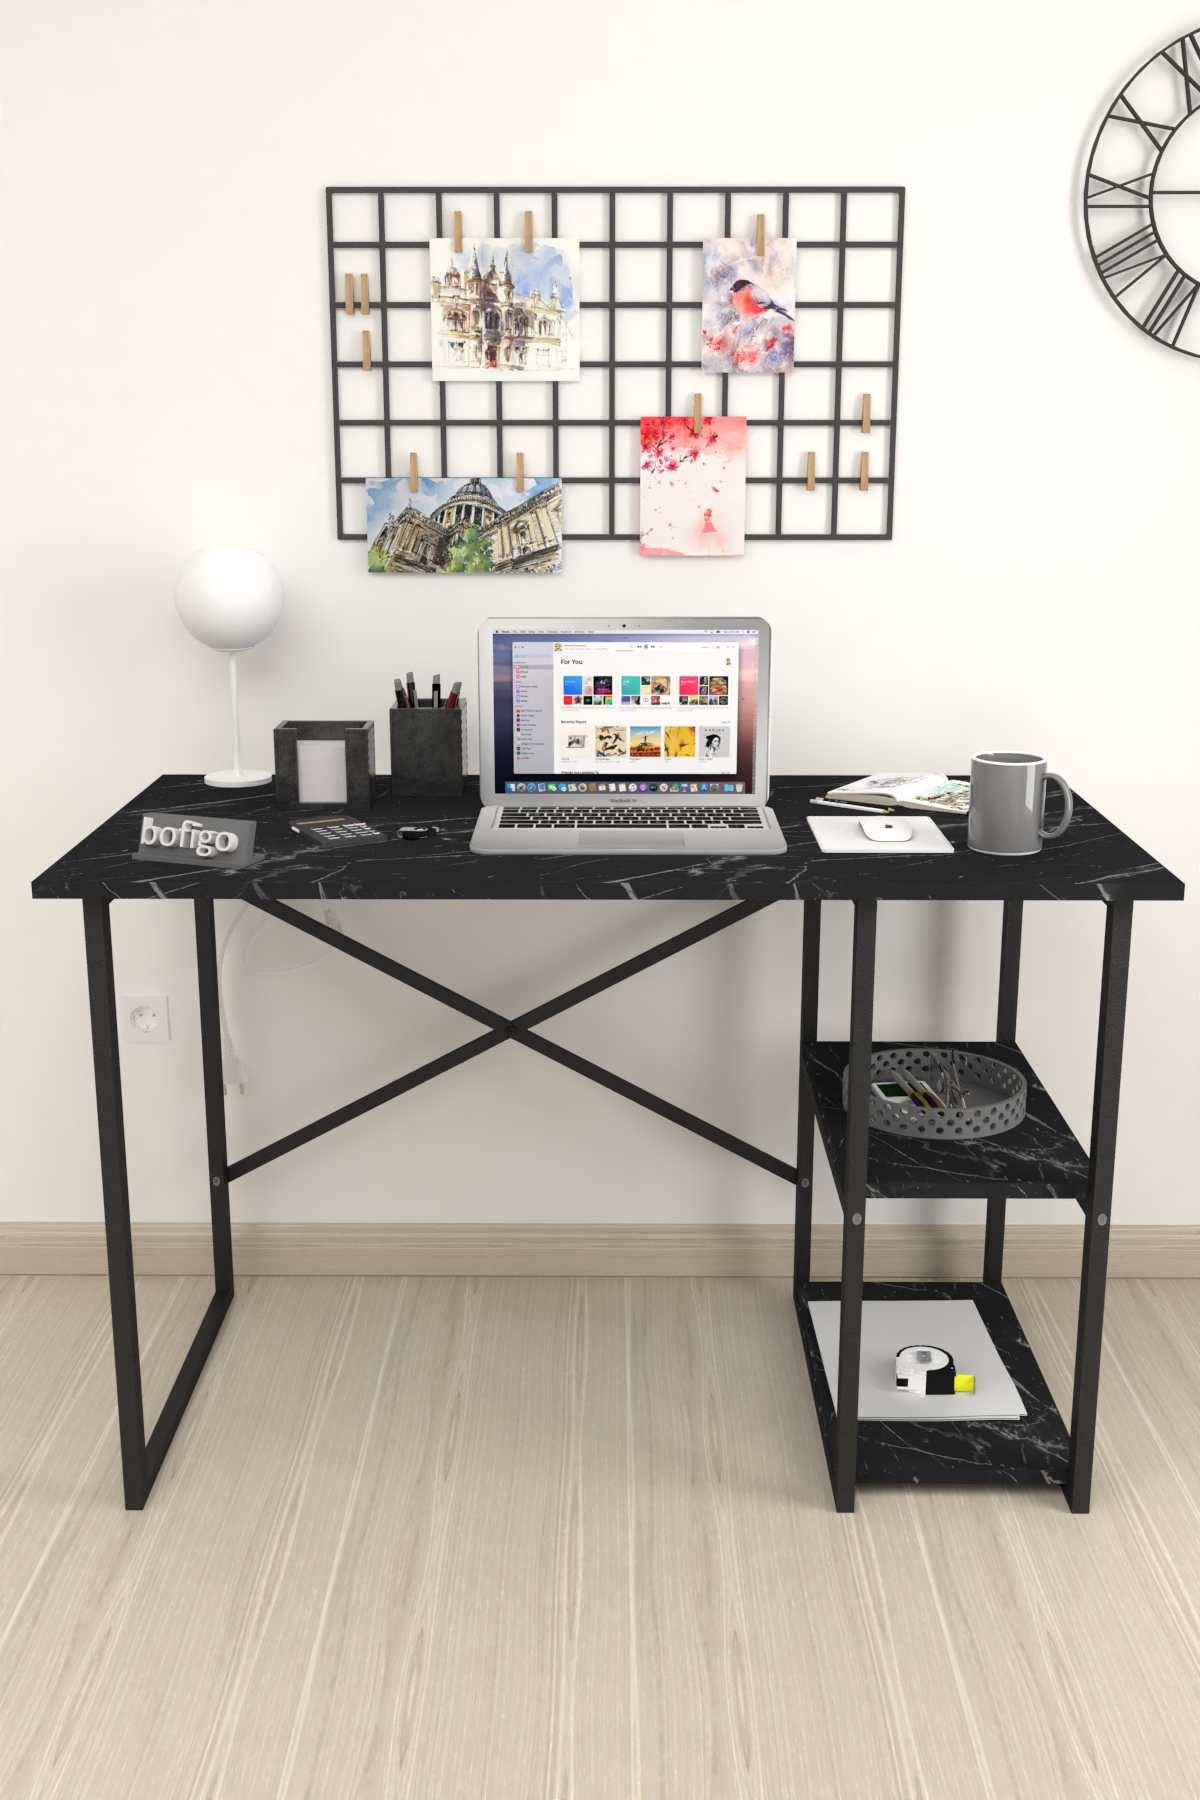 Bofigo 2 Shelf Desk 60x120 cm Bendir